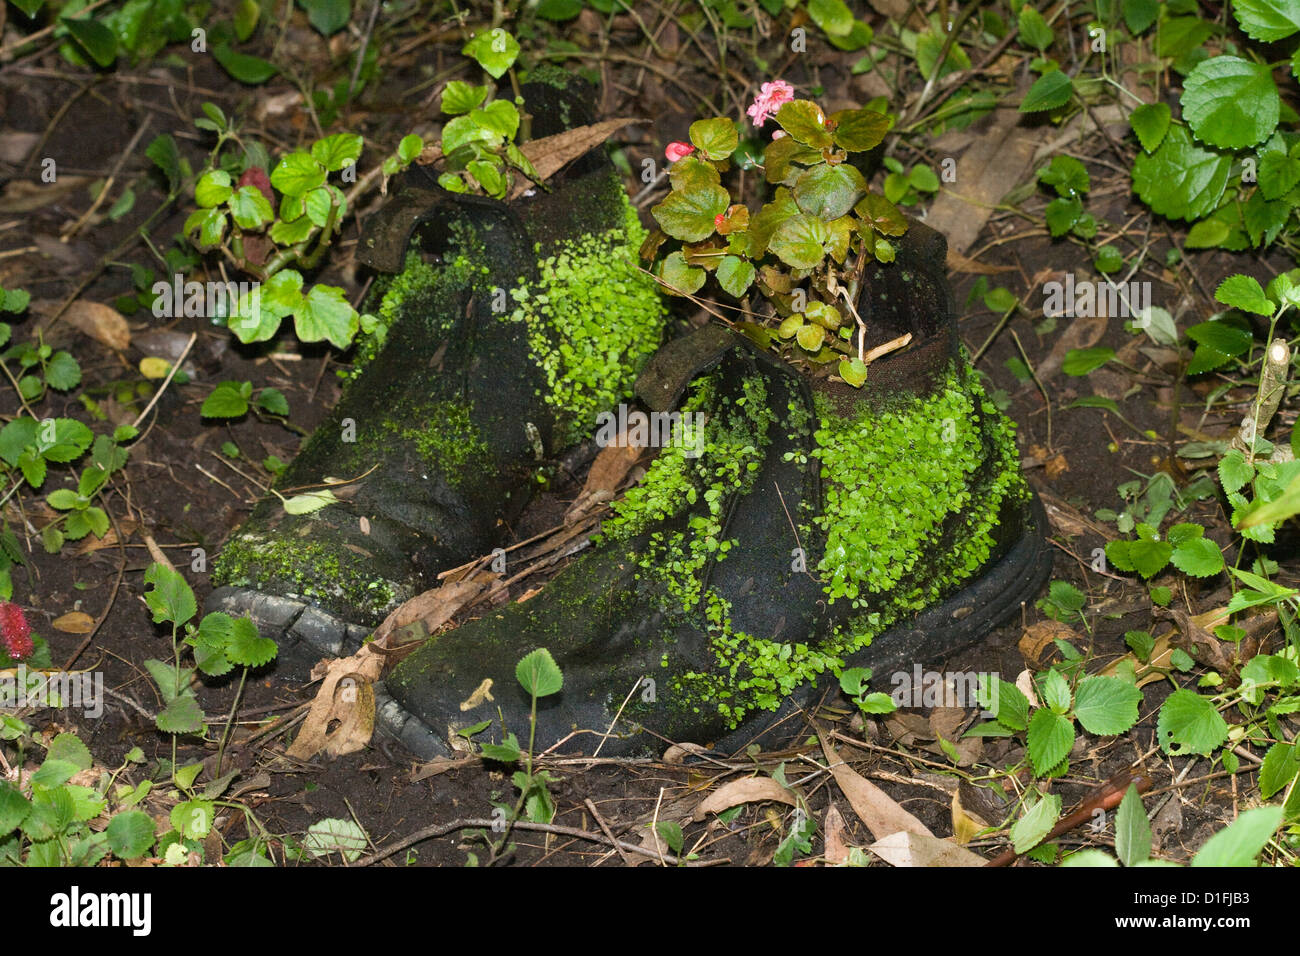 Stivali vecchi con moss / felci crescente sulla pelle - utilizzati come vasi per piante / contenitori in giardino Foto Stock